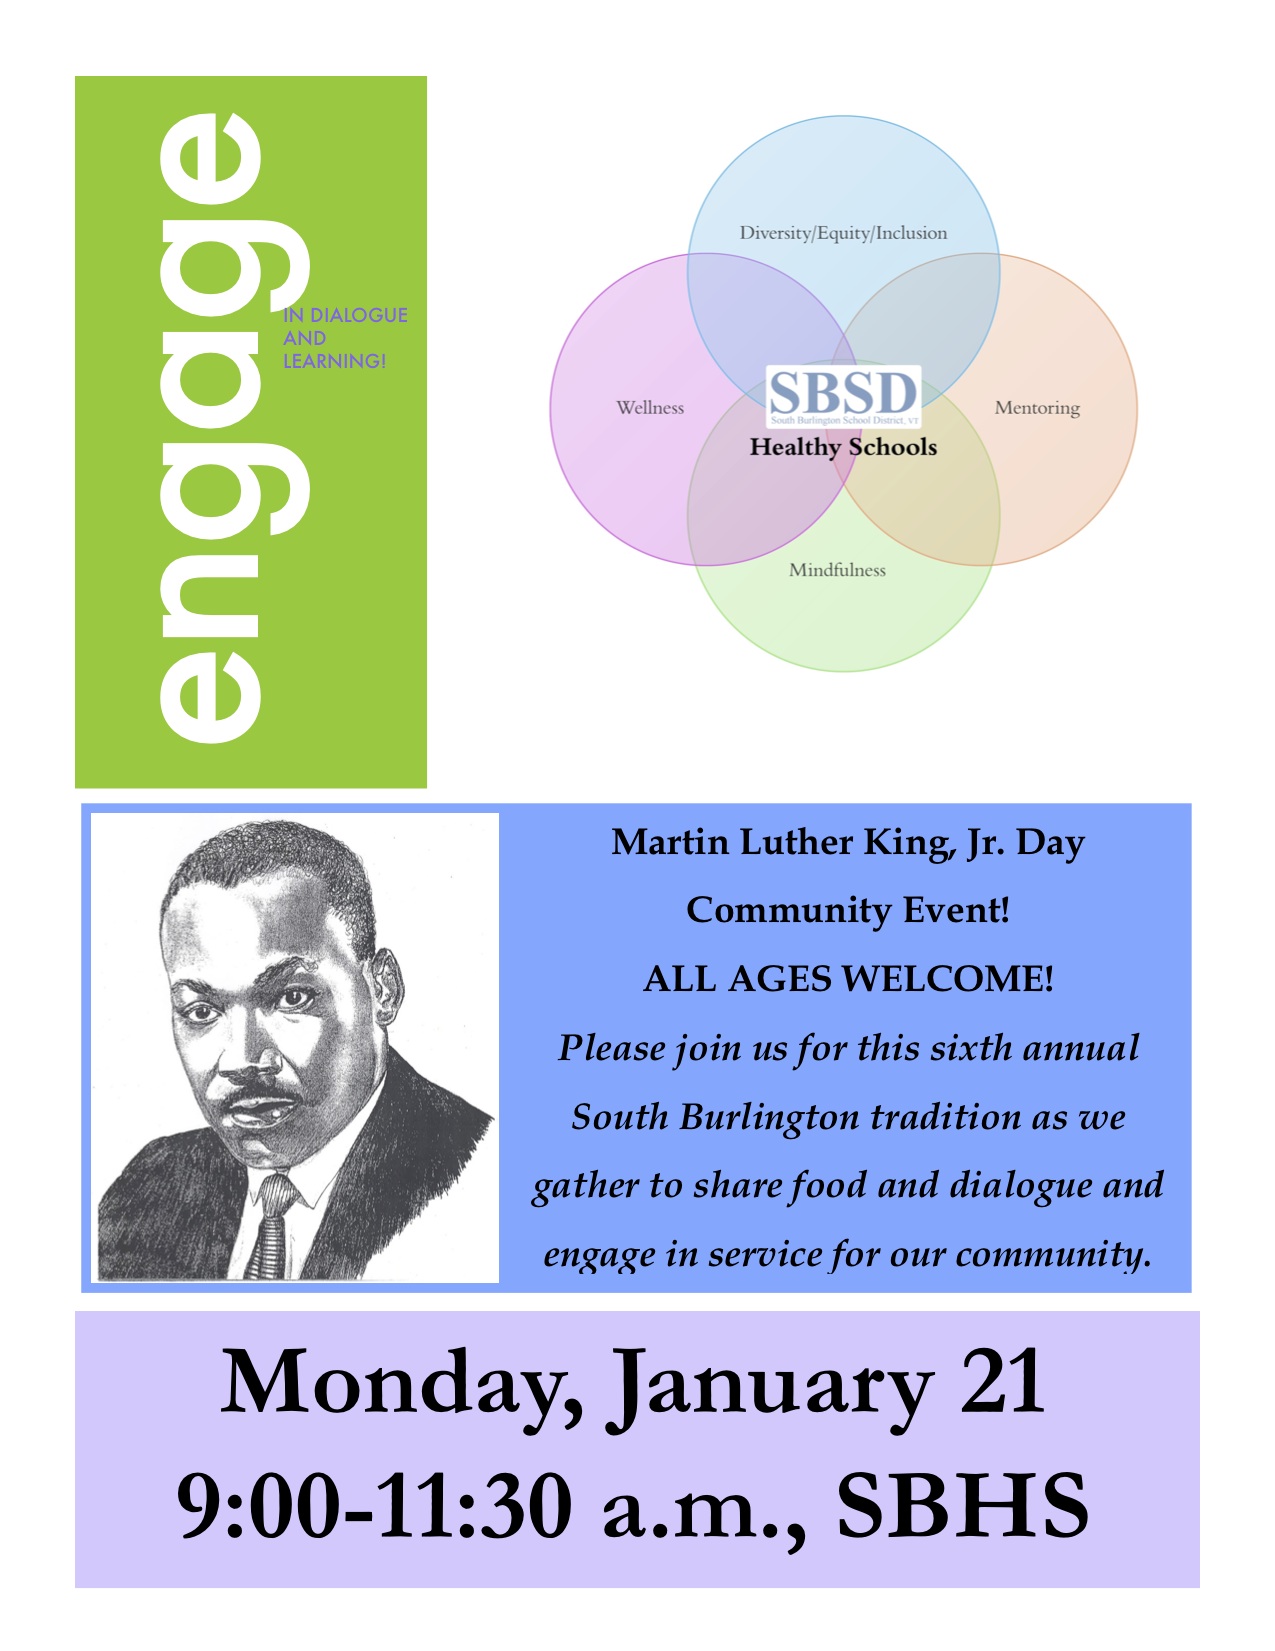 MLK Jr Day Community Event Flyer -- January 21, 2019